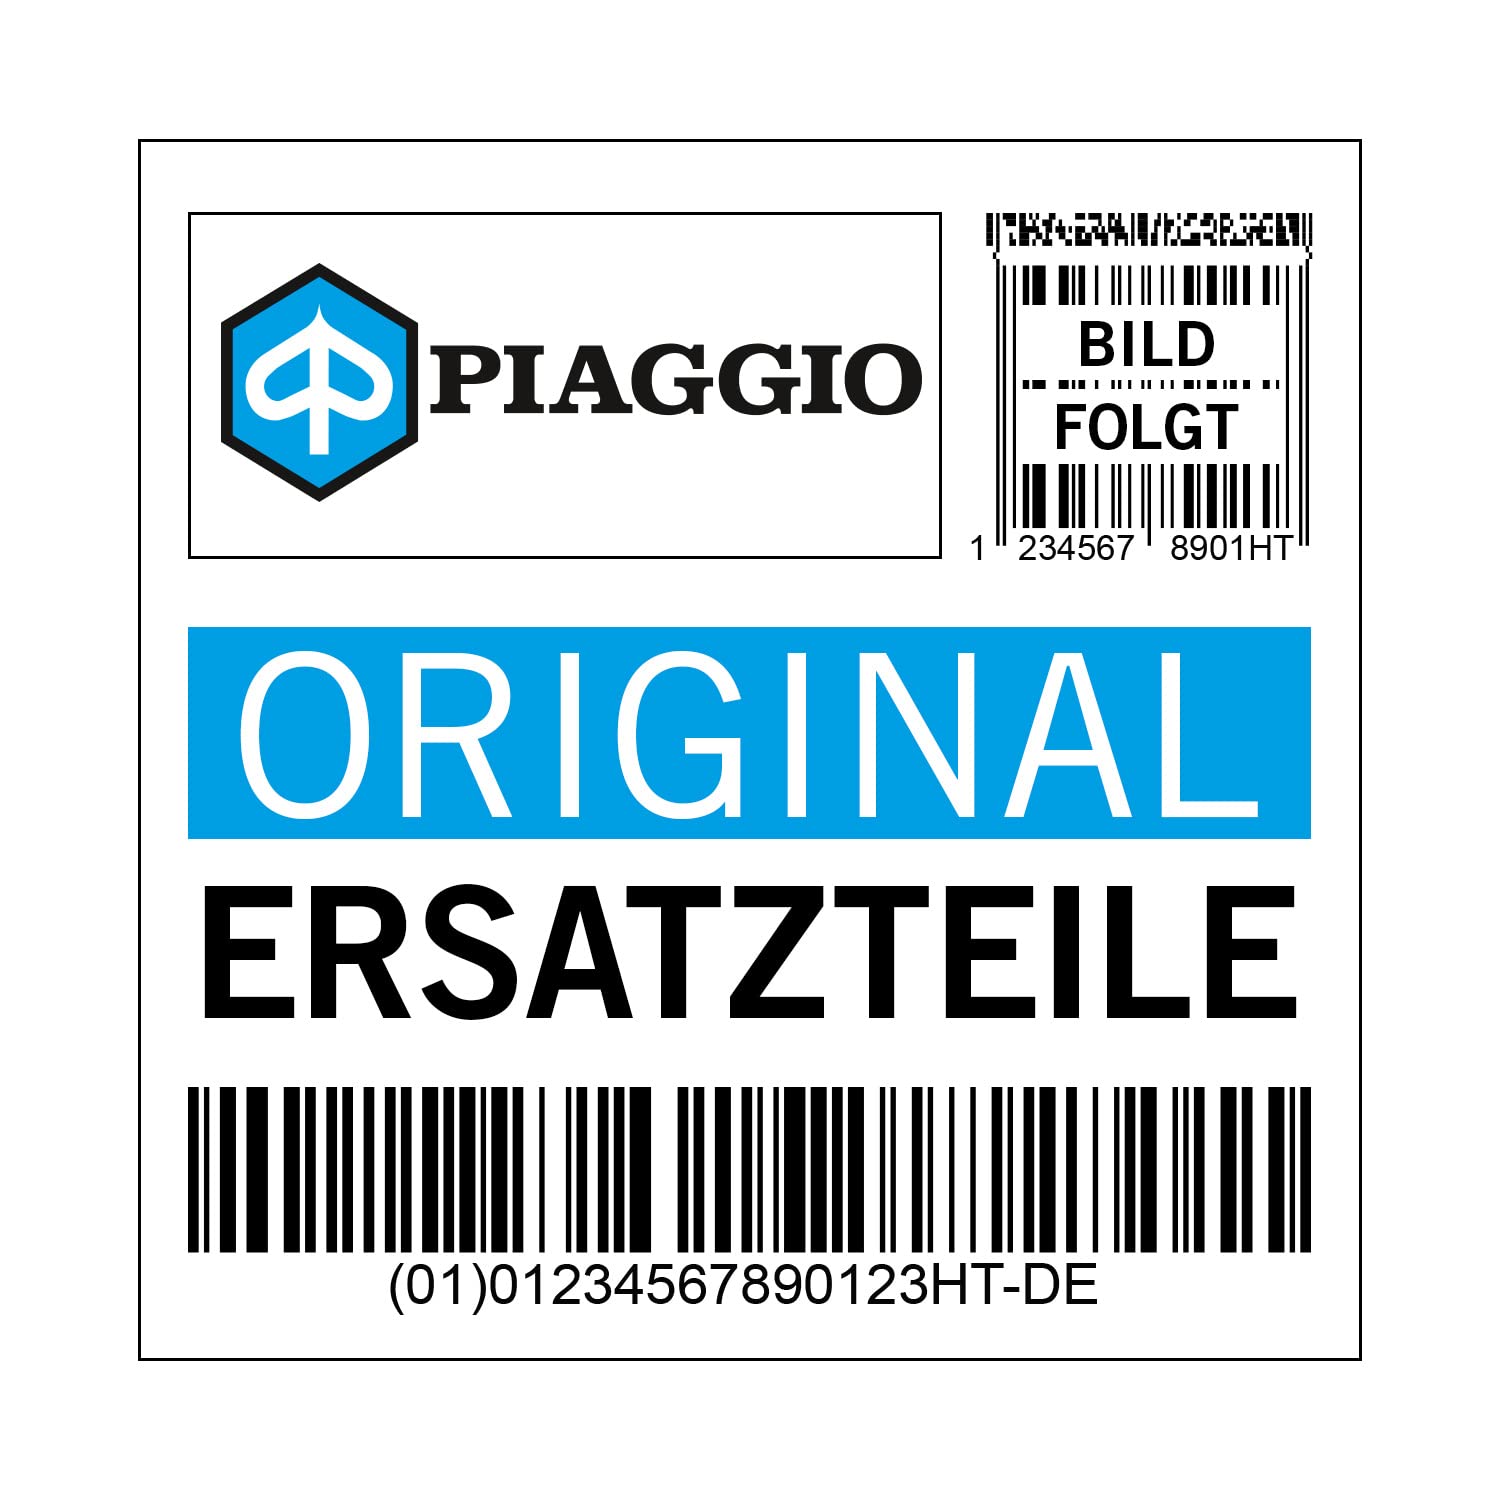 Bremszylinderabdeckung Piaggio, links, 650965